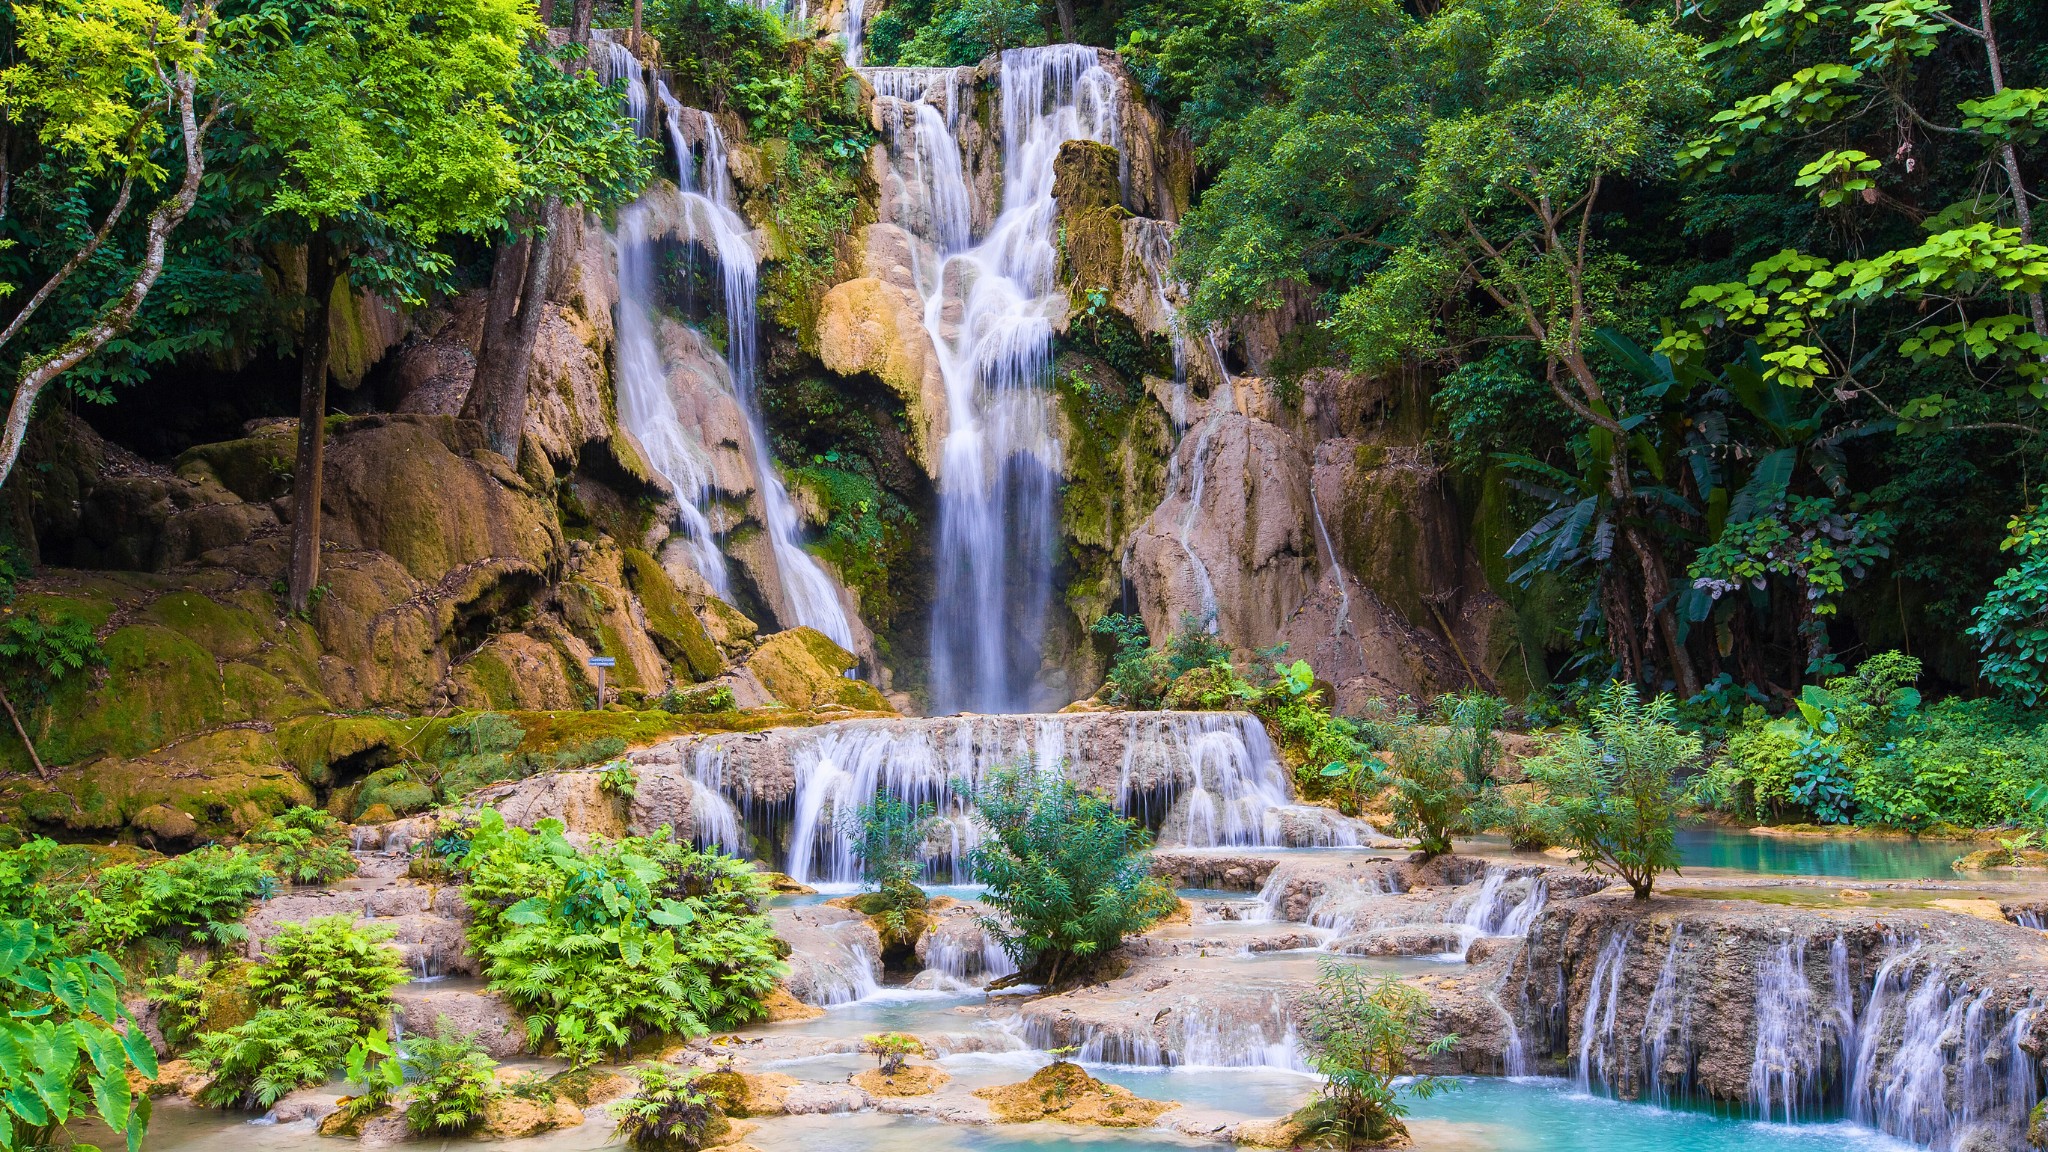 Day 4 Enjoy Refreshing Pools In Kuang Si Waterfalls